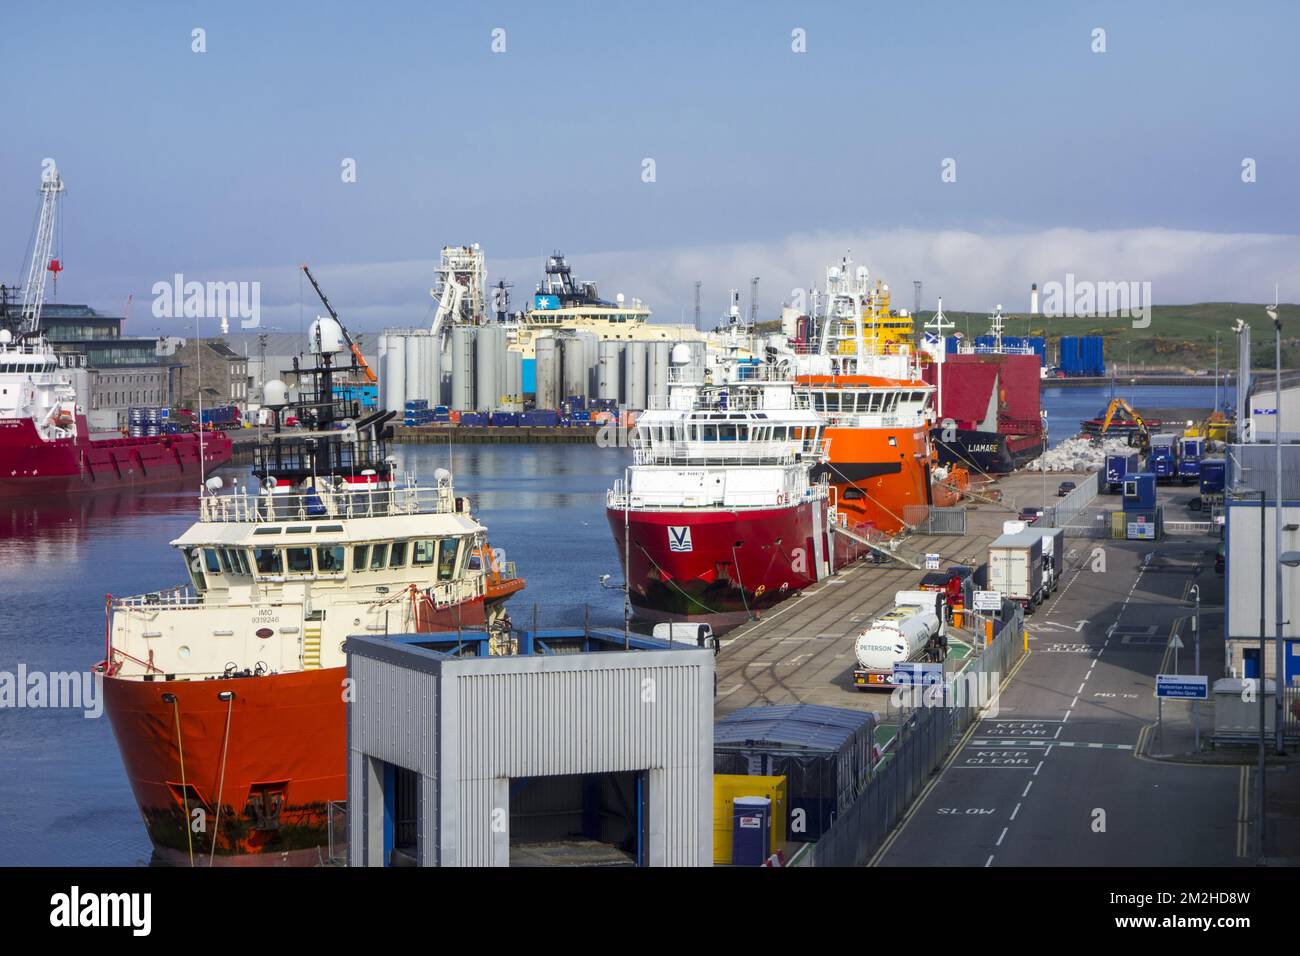 Schiffe, die im Hafen/Hafen von Aberdeen, Aberdeenshire, Schottland, Vereinigtes Königreich, anlegen | Le Port d'Aberdeen, Ecosse, Royaume-Uni 19/06/2018 Stockfoto